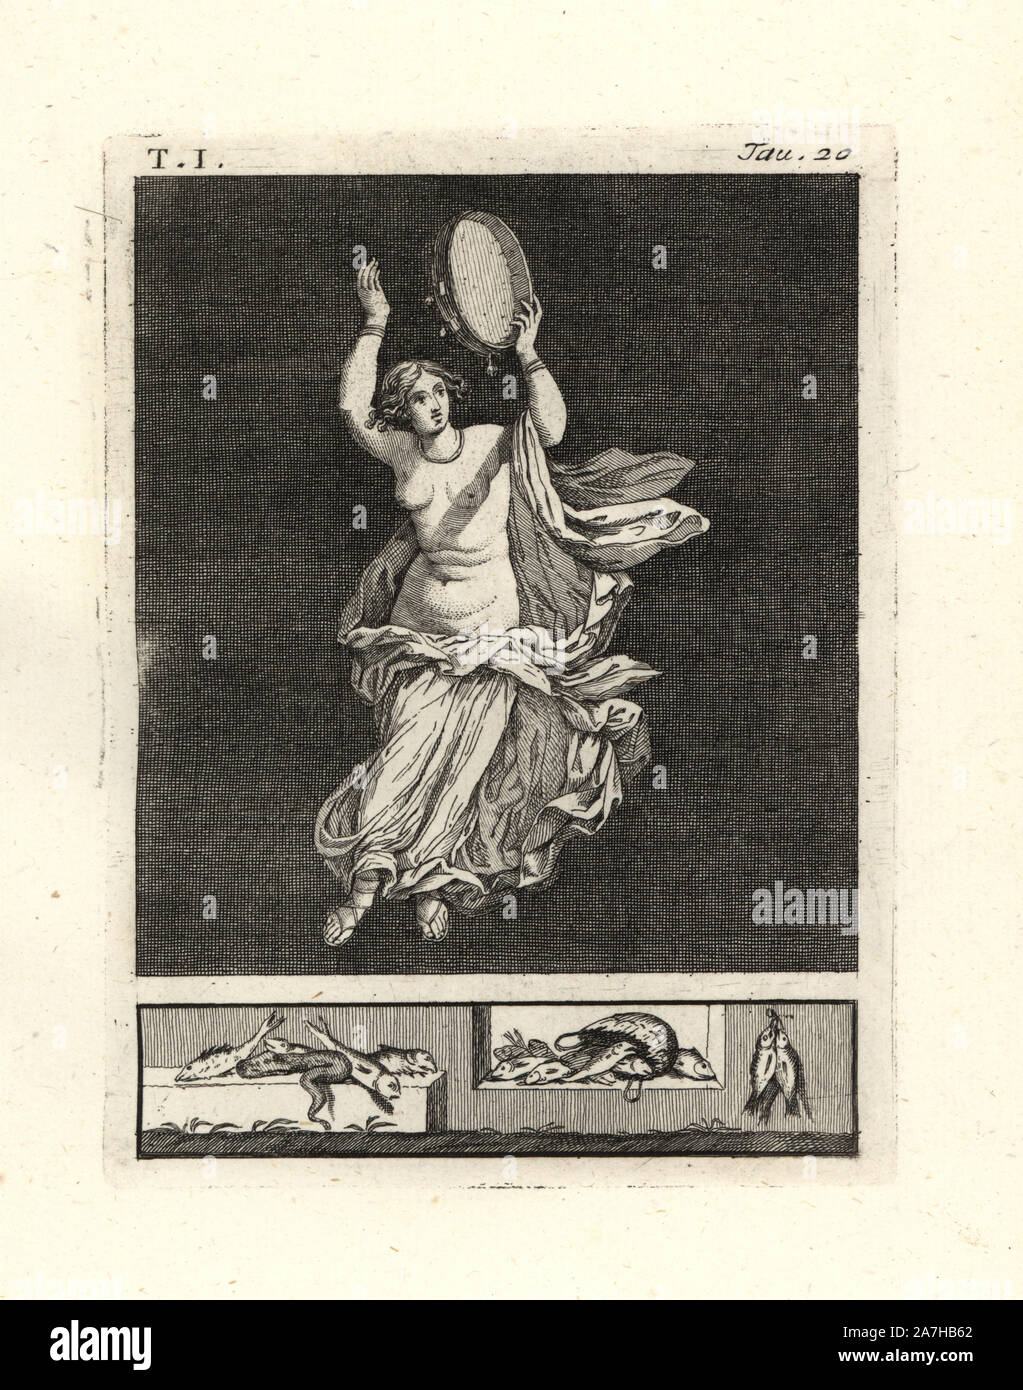 Die Malerei von Wand von einem Raum entfernt, vielleicht ein TRICLINIUM oder im Speisesaal, in einem Haus in Pompeji im Jahre 1749. Es zeigt eine bacchant Tänzer ein tympanon oder Tamburin mit ihrer Hand. Sie trägt ein Halsband und Armbänder und eine feine Bademantel in Weiß mit Rot, die Farbe des Bacchus. Kupferstich von Tommaso Piroli aus seiner eigenen'Antichita di Ercolano" (altertümer von Herculaneum), Rom, 1789 eingraviert. Italienischen Maler und Kupferstecher Piroli (1752-1824) veröffentlicht sechs Bände zwischen 1789 und 1807 dokumentieren die Wandmalereien und Bronzen in Heraculaneum und Pompeji gefunden. Stockfoto